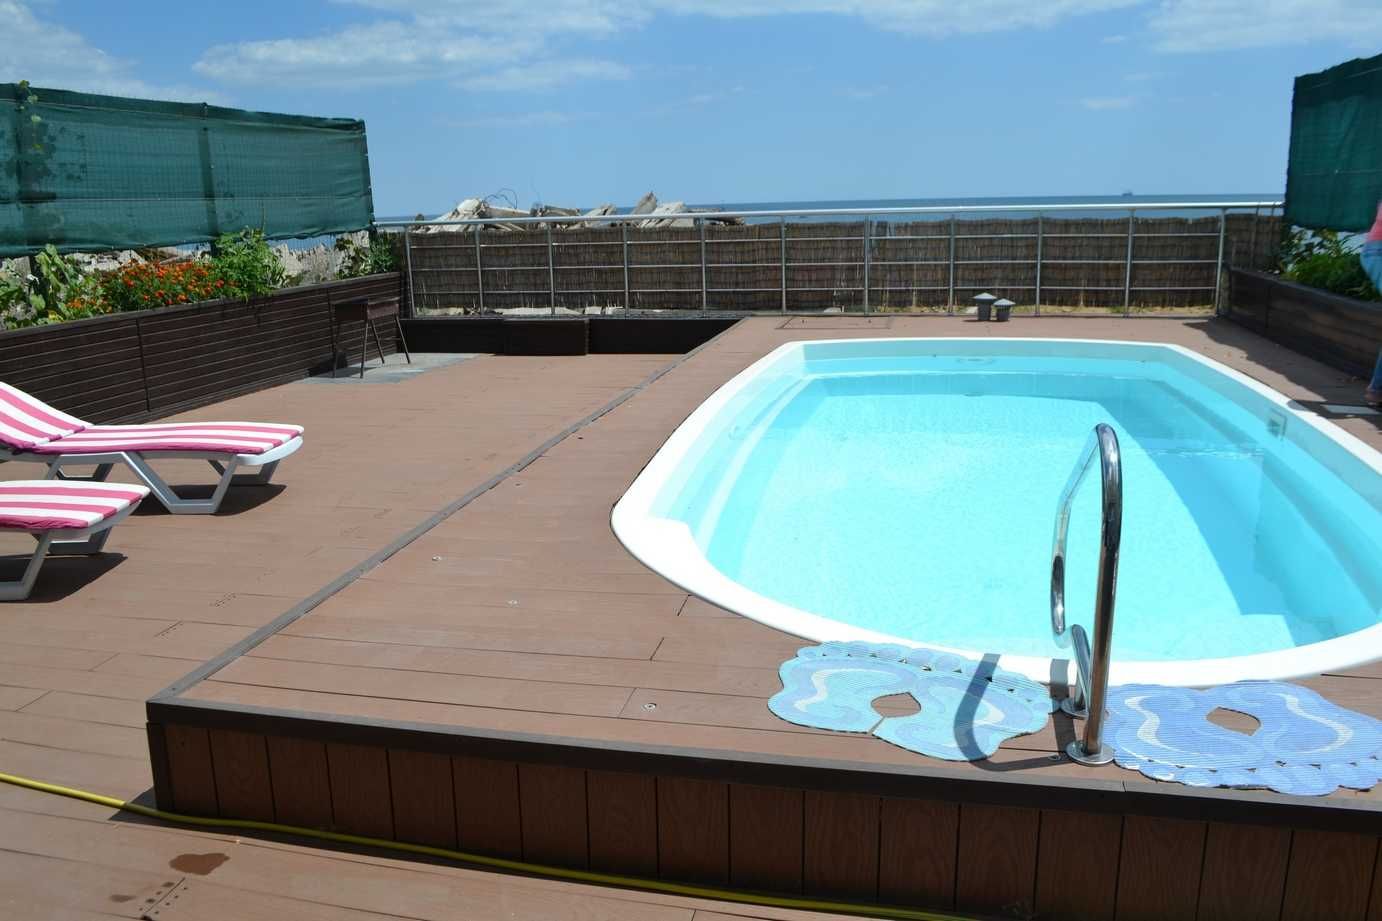 Свободно!VIP коттедж, бассейн с подогревом 1 линия у моря, пляж.Одесса